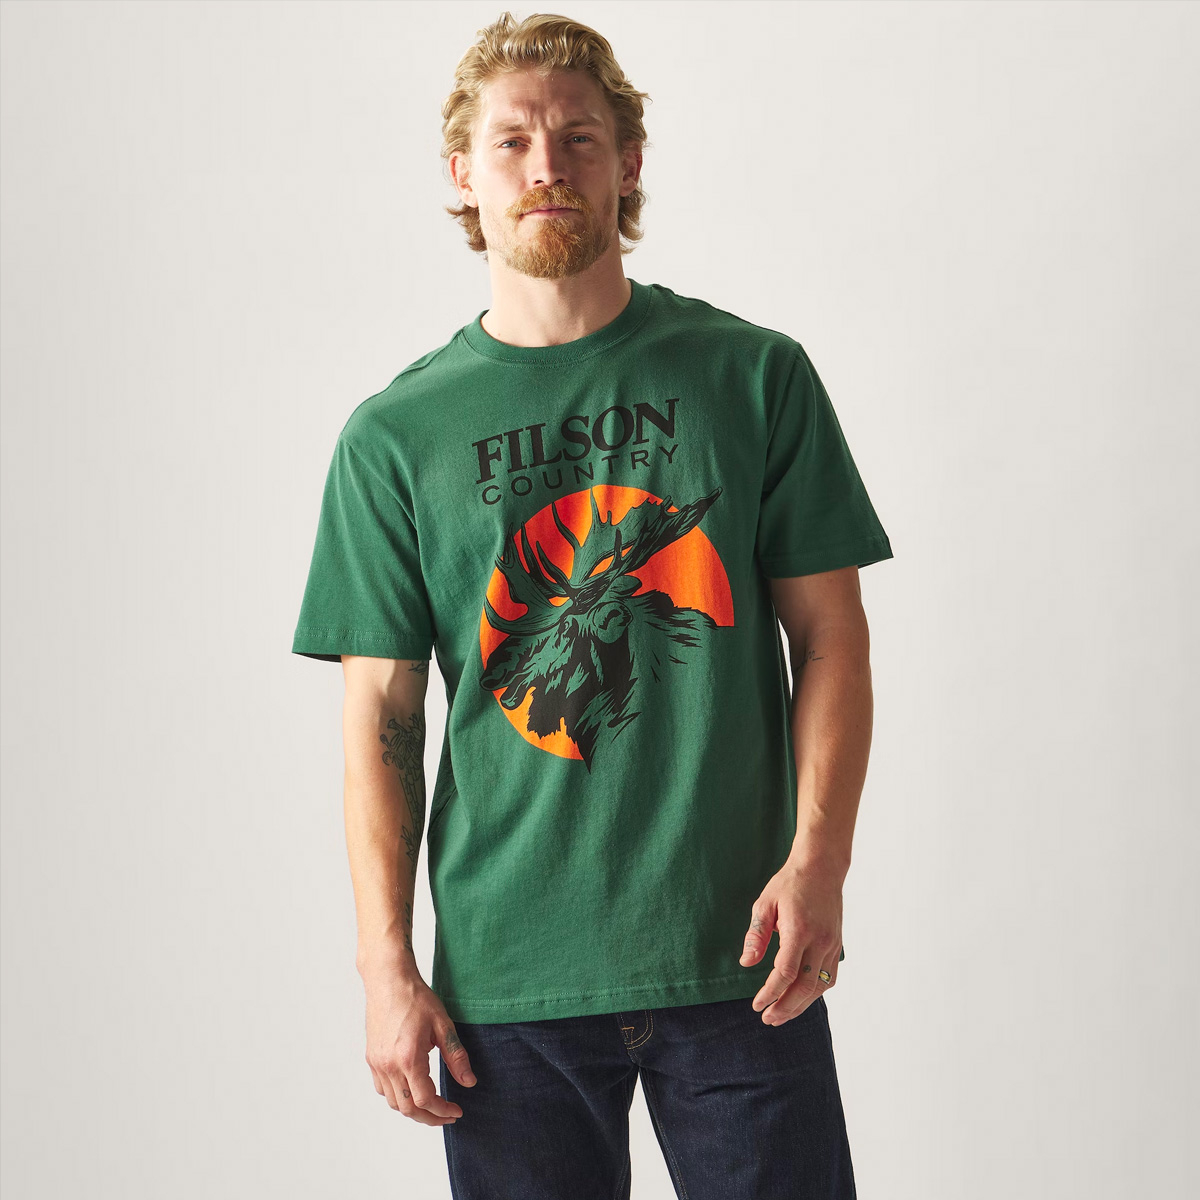 Filson Pioneer Graphic T-Shirt Green/Moose, gemaakt van 100% katoen met textuur, structuur en een comfortabel gevoel